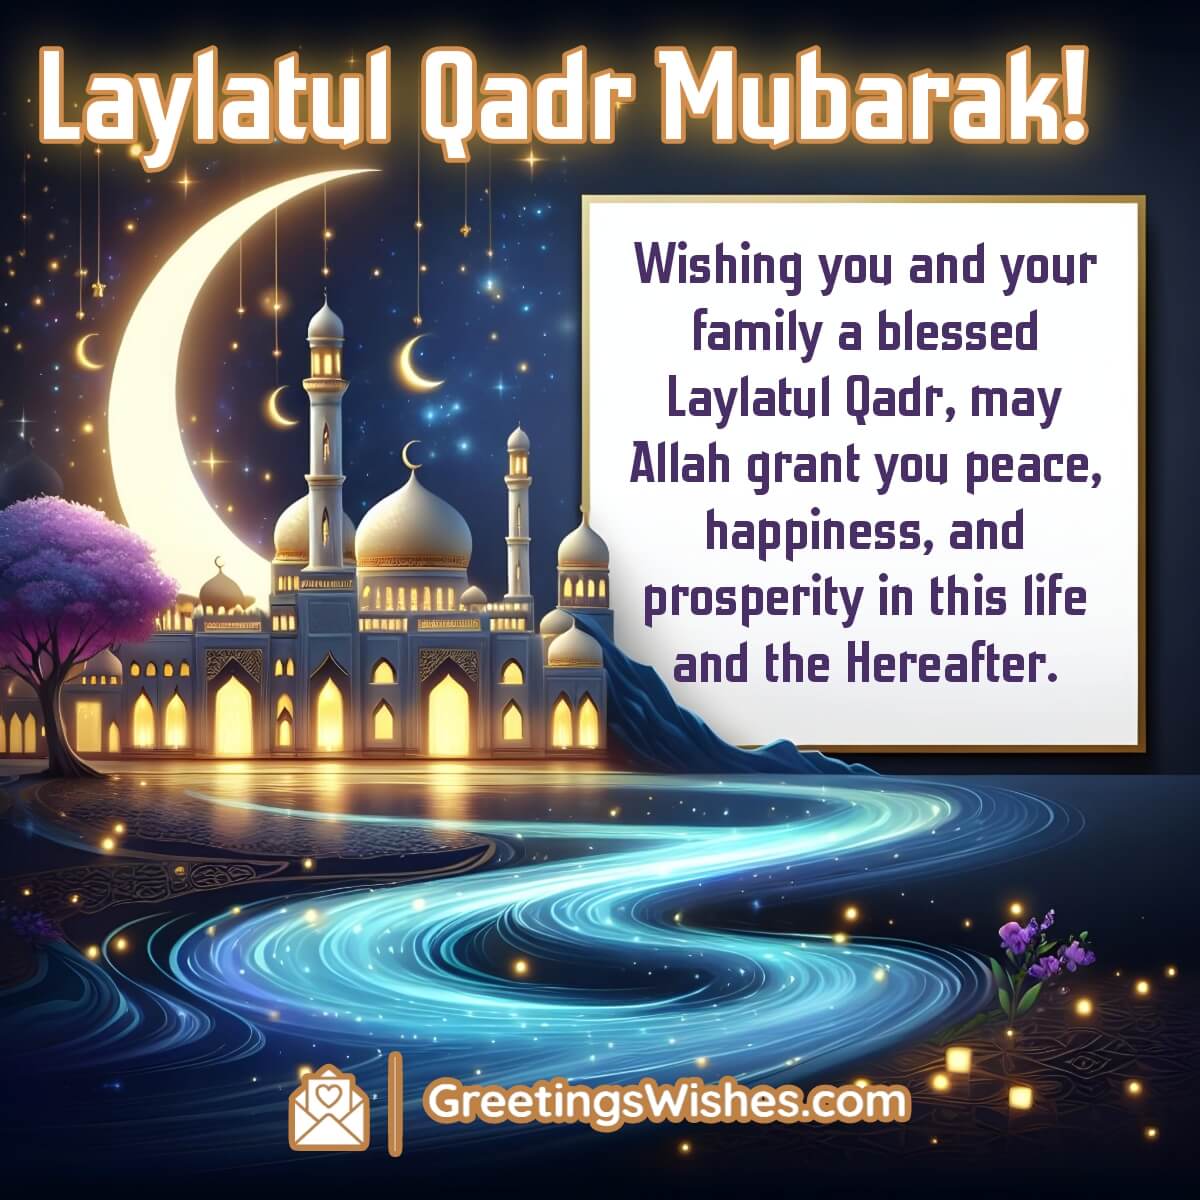 Wishing Laylatul Qadr Mubarak!